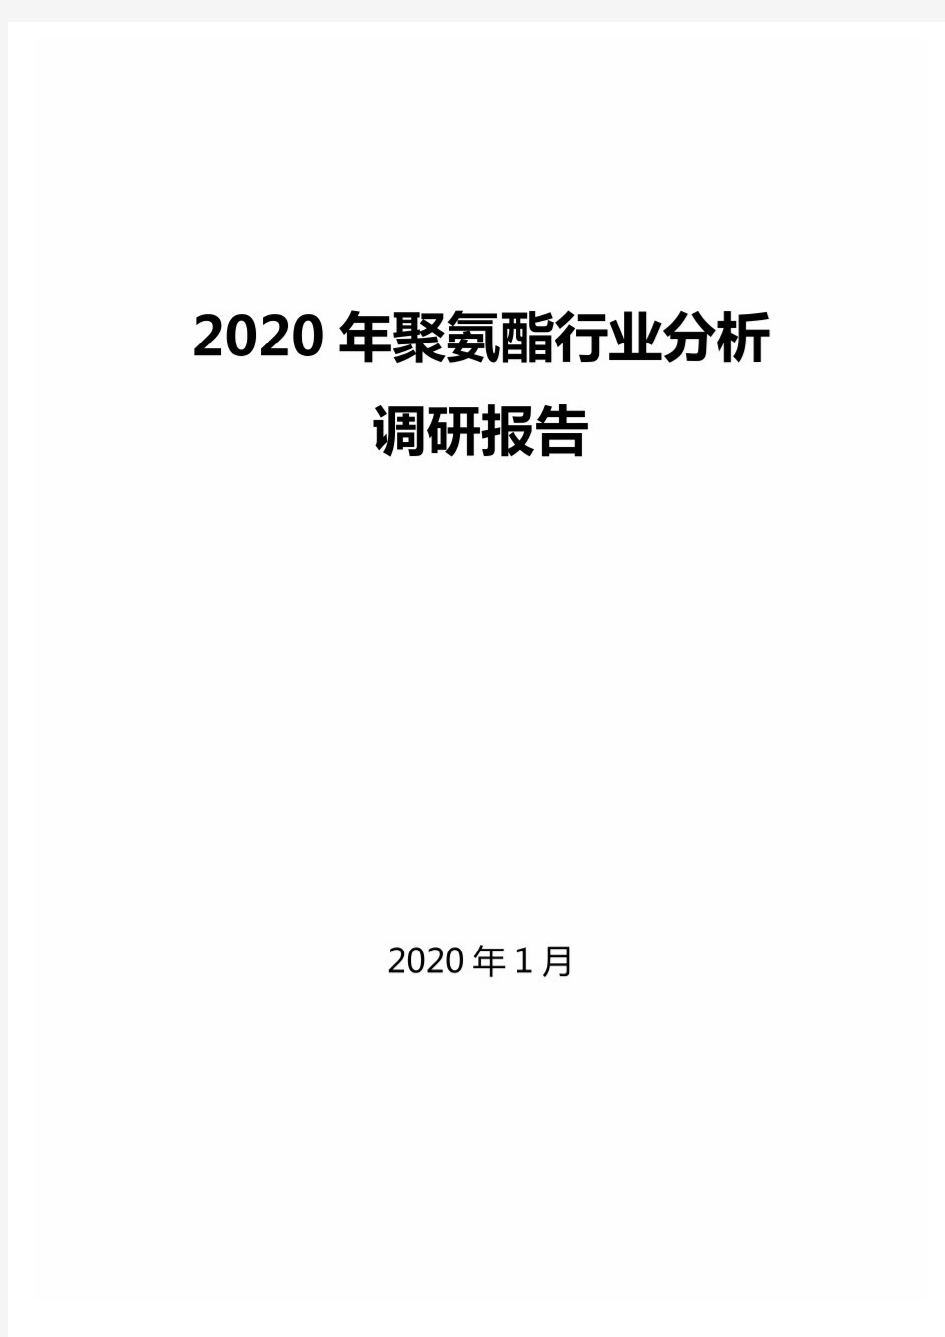 2020年聚氨酯行业分析调研报告